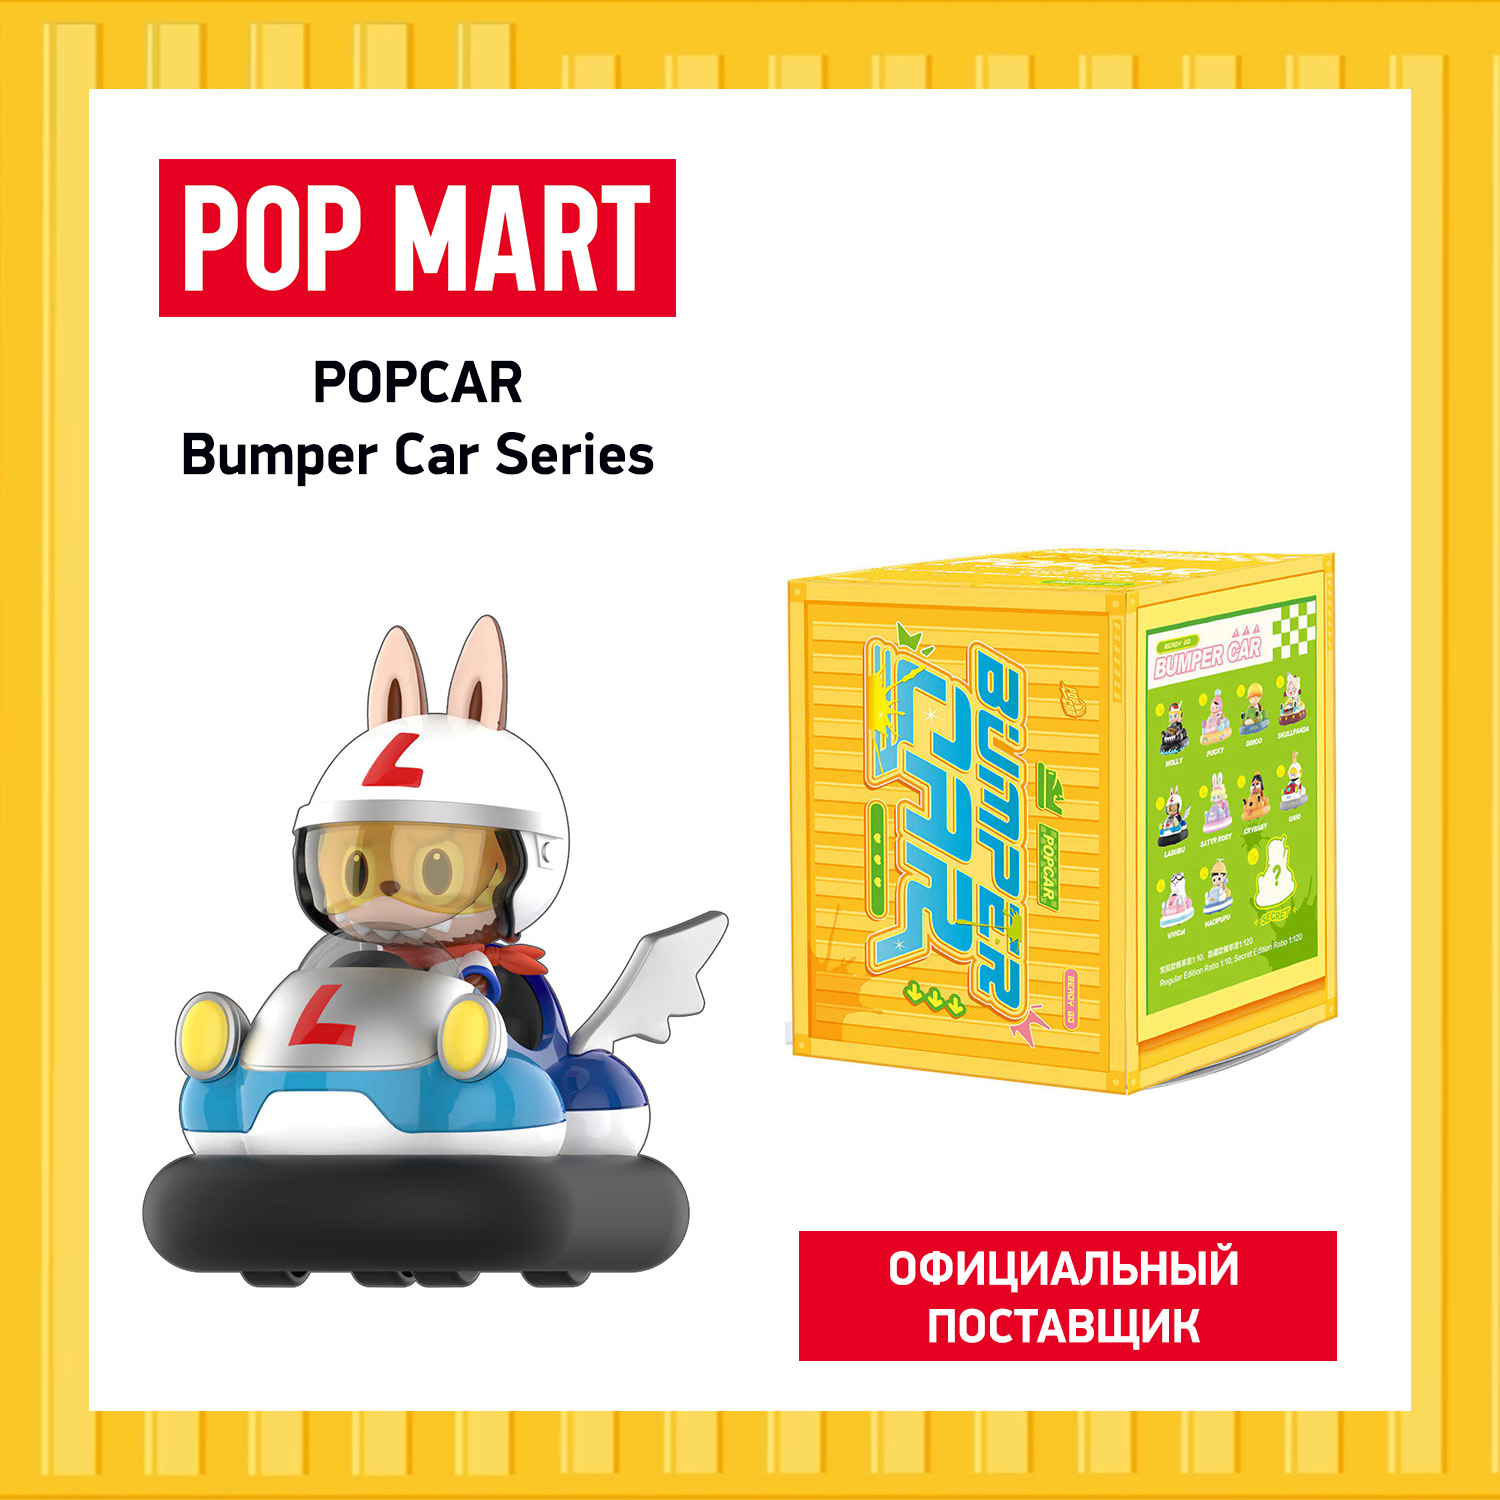 Коллекционная фигурка Pop Mart Popcar Bumper Car коллекционная фигурка pop mart skullpanda city of night